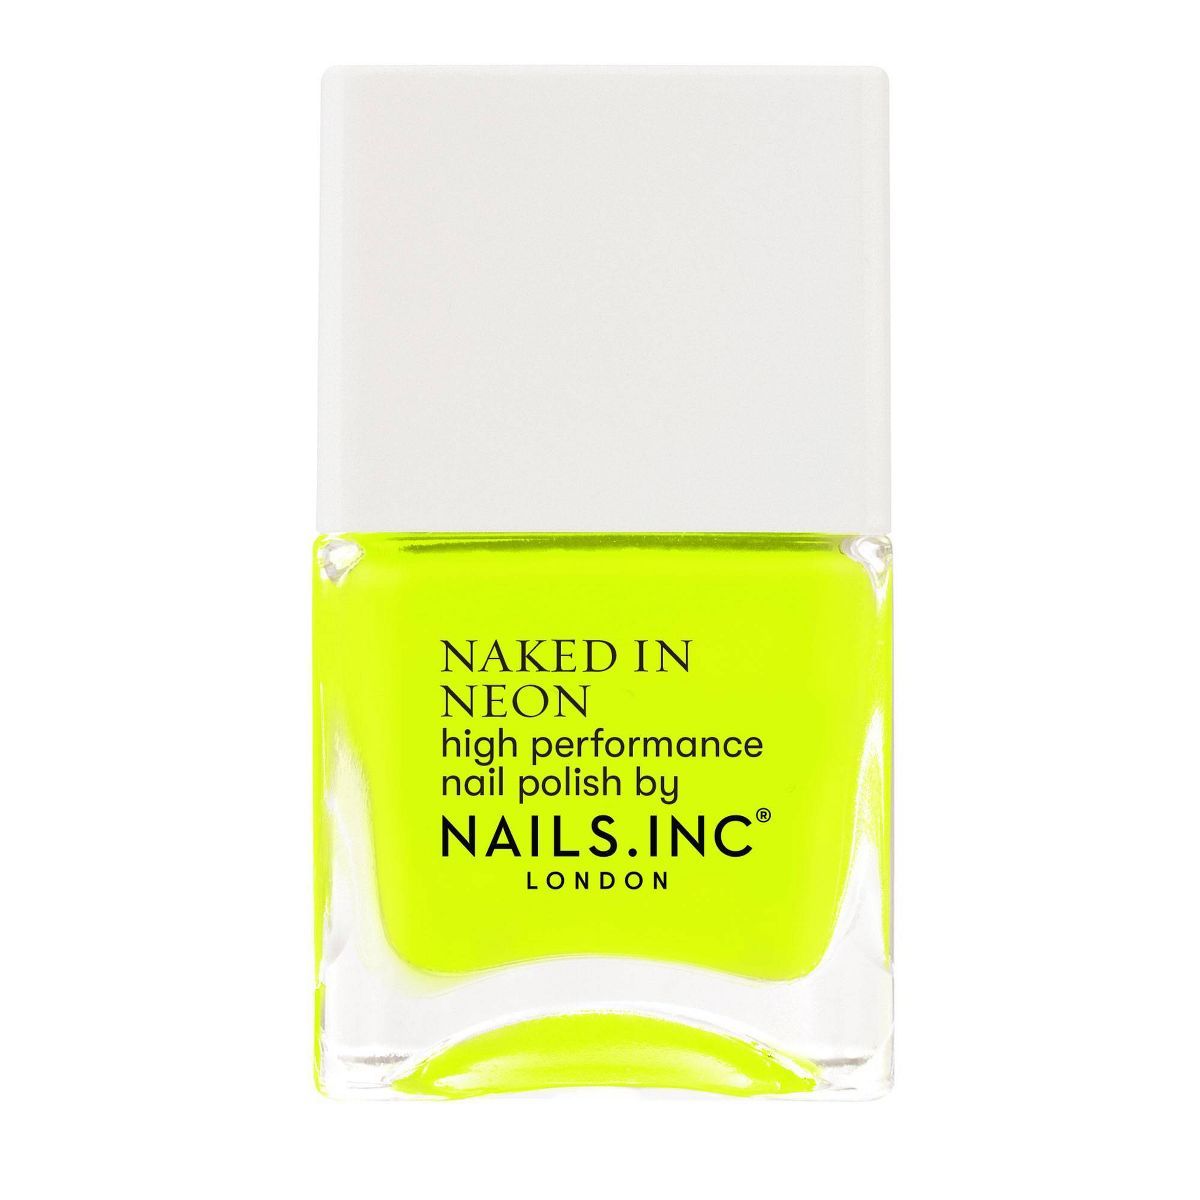 Nails Inc. Naked in Neon Nail Polish - 0.47 fl oz | Target